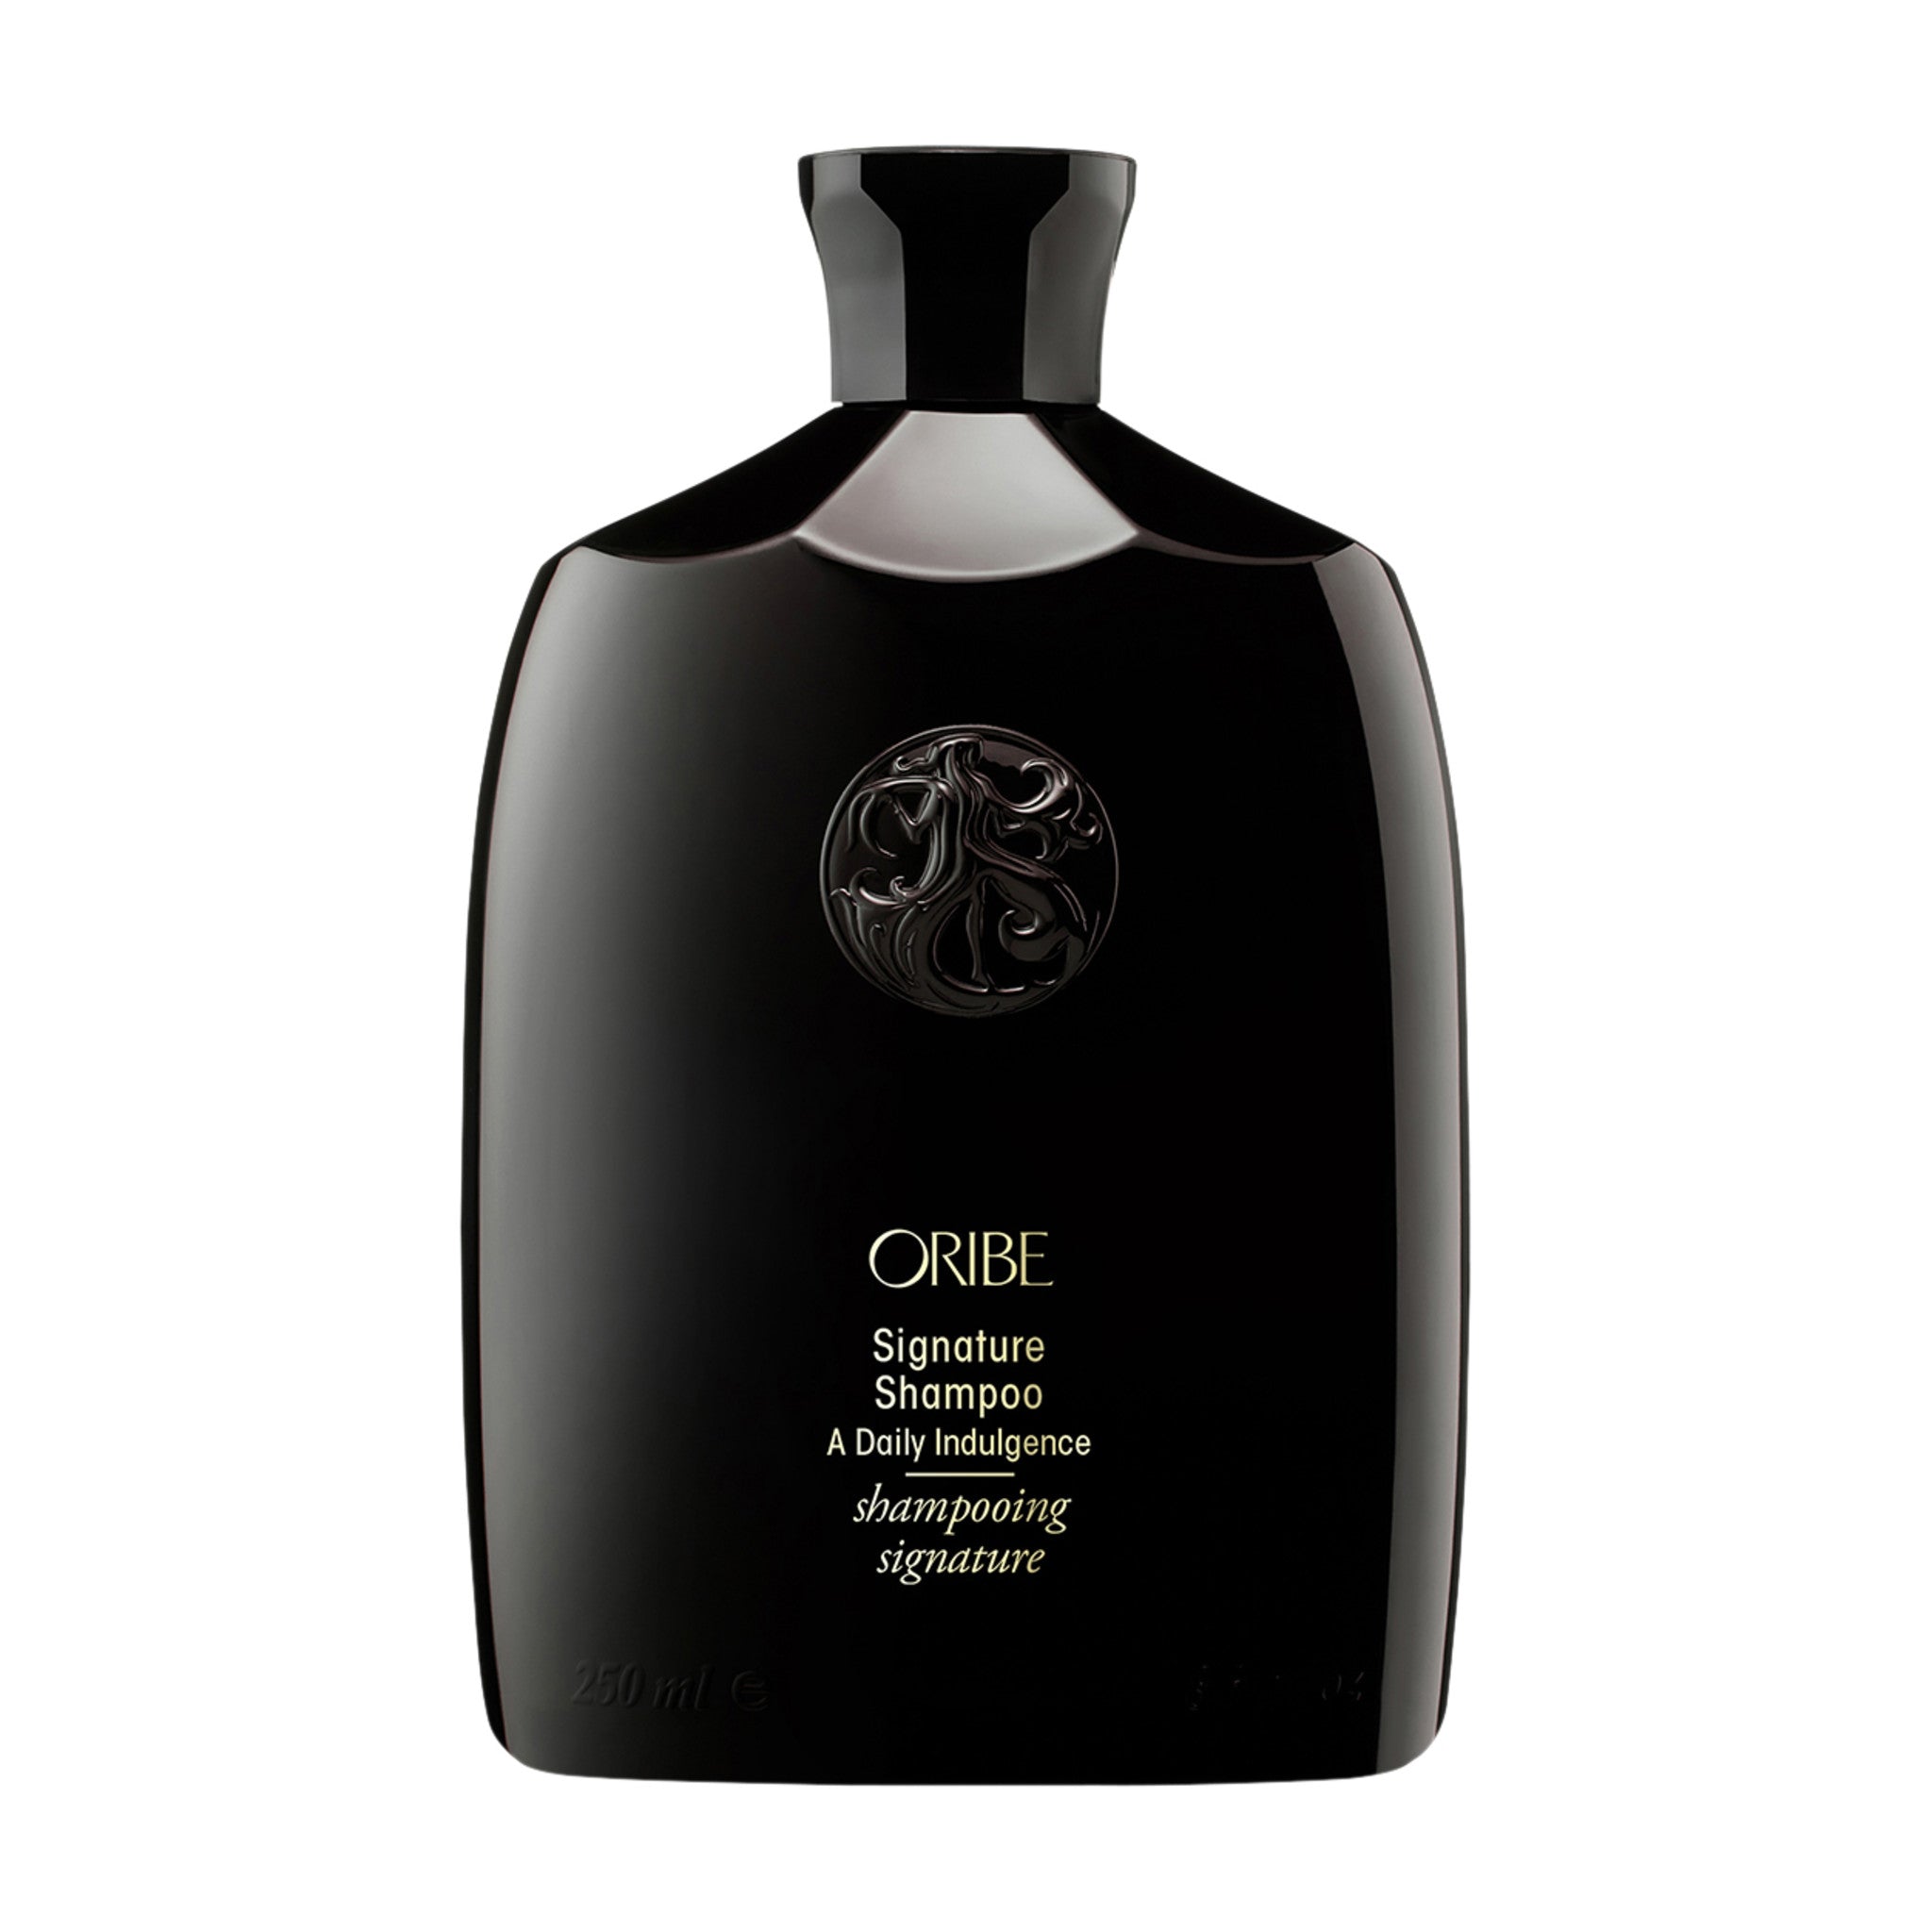 Oribe Signature Shampoo Size variant: 8.5 oz main image.